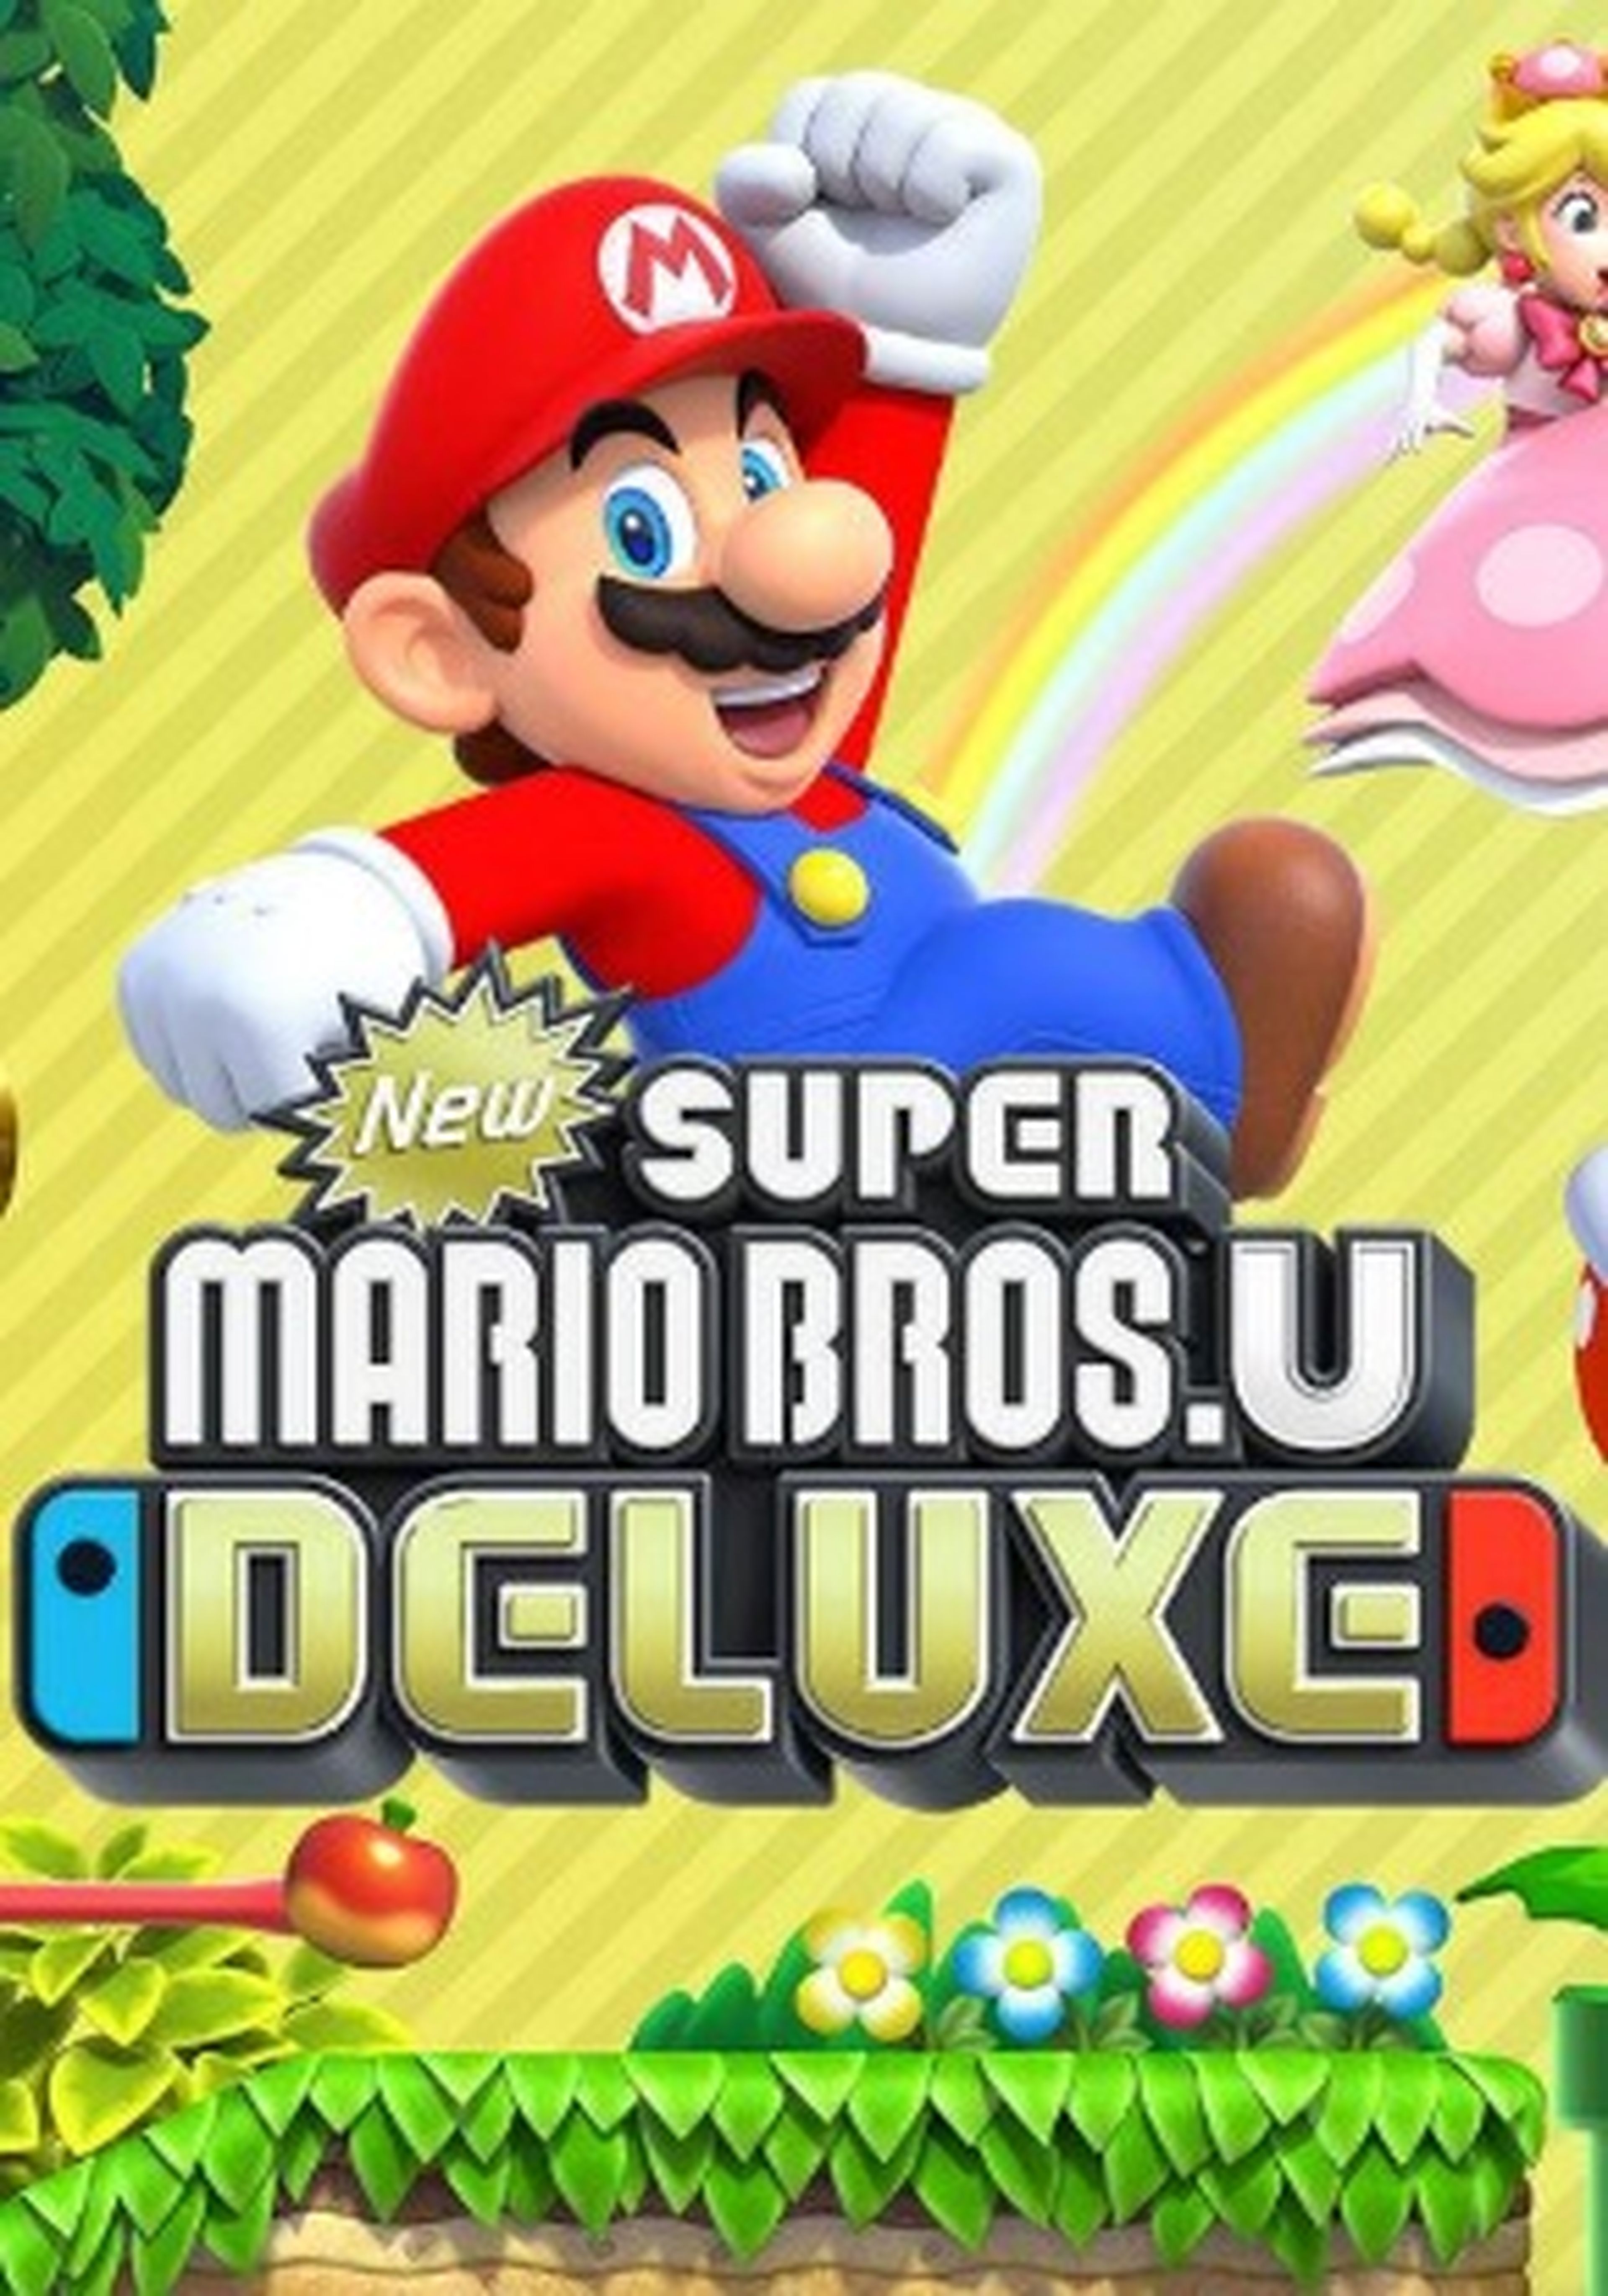 Mario deluxe nintendo switch. Игра New super Mario Bros. U Deluxe. Супер Марио БРОС U Делюкс. Super Mario Bros Deluxe Nintendo Switch. New super Mario Bros u Deluxe Nintendo Switch.